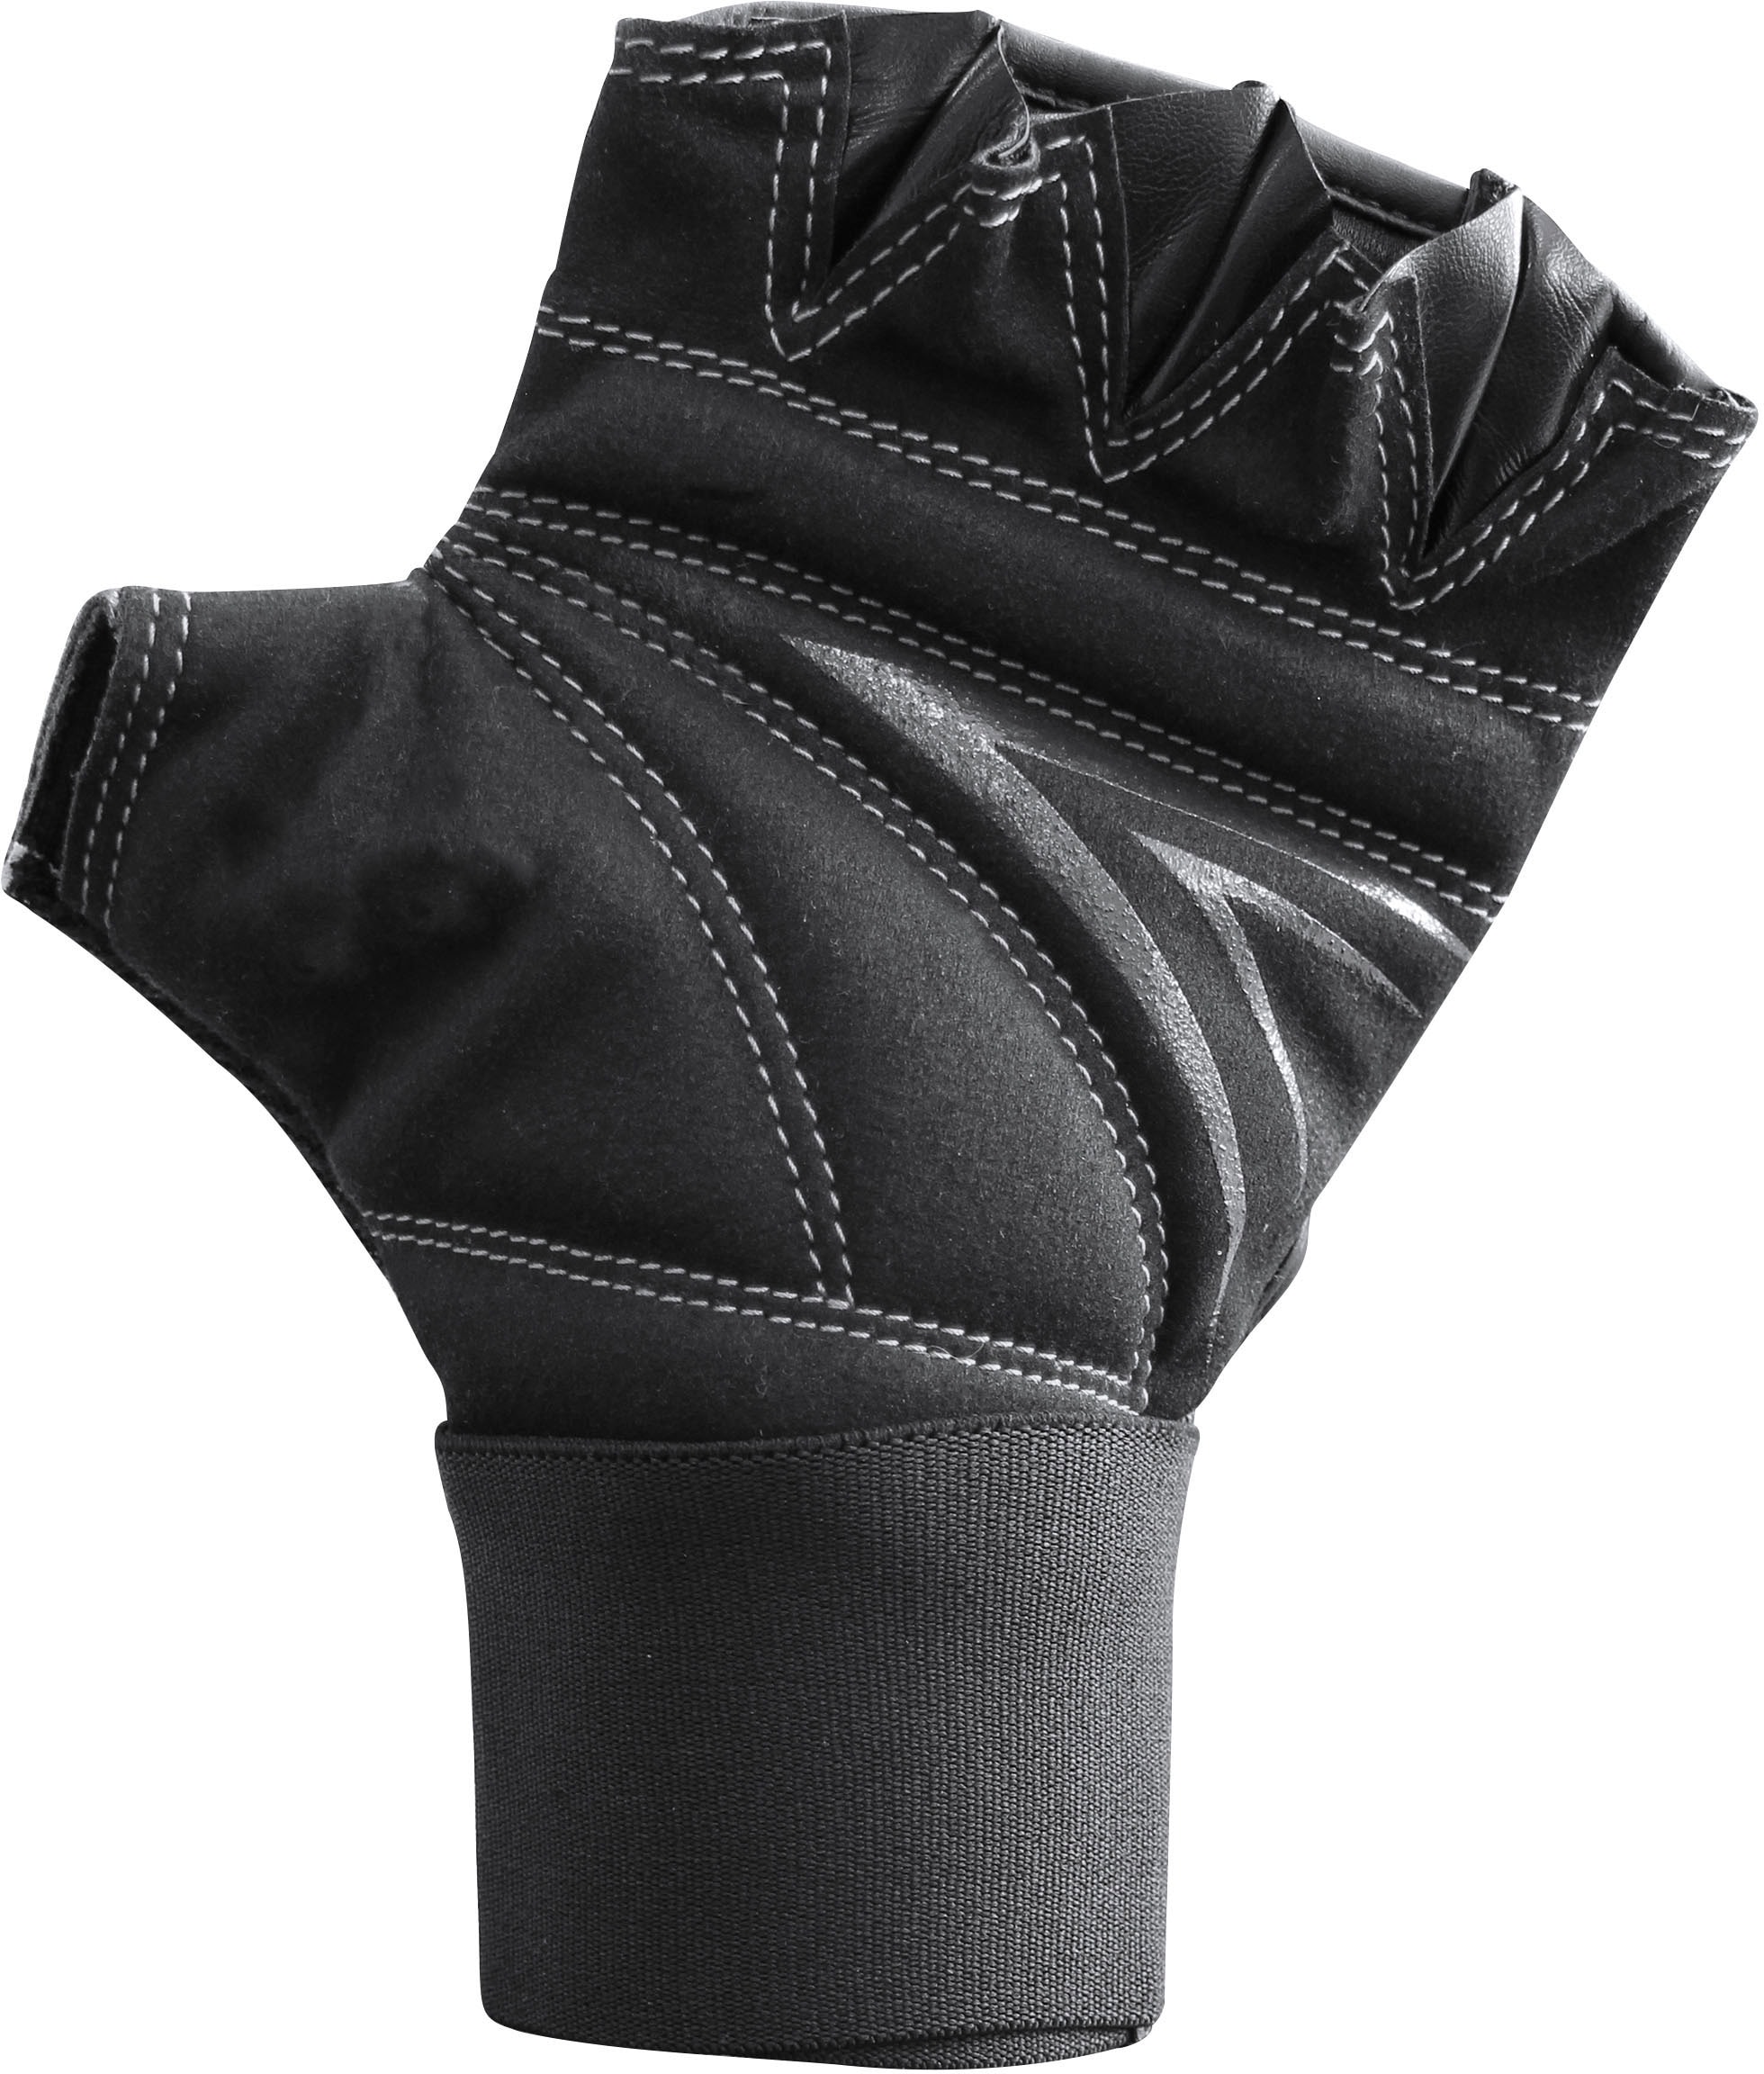 »Speed Glove« bei Punch-Handschuhe adidas Gel Performance